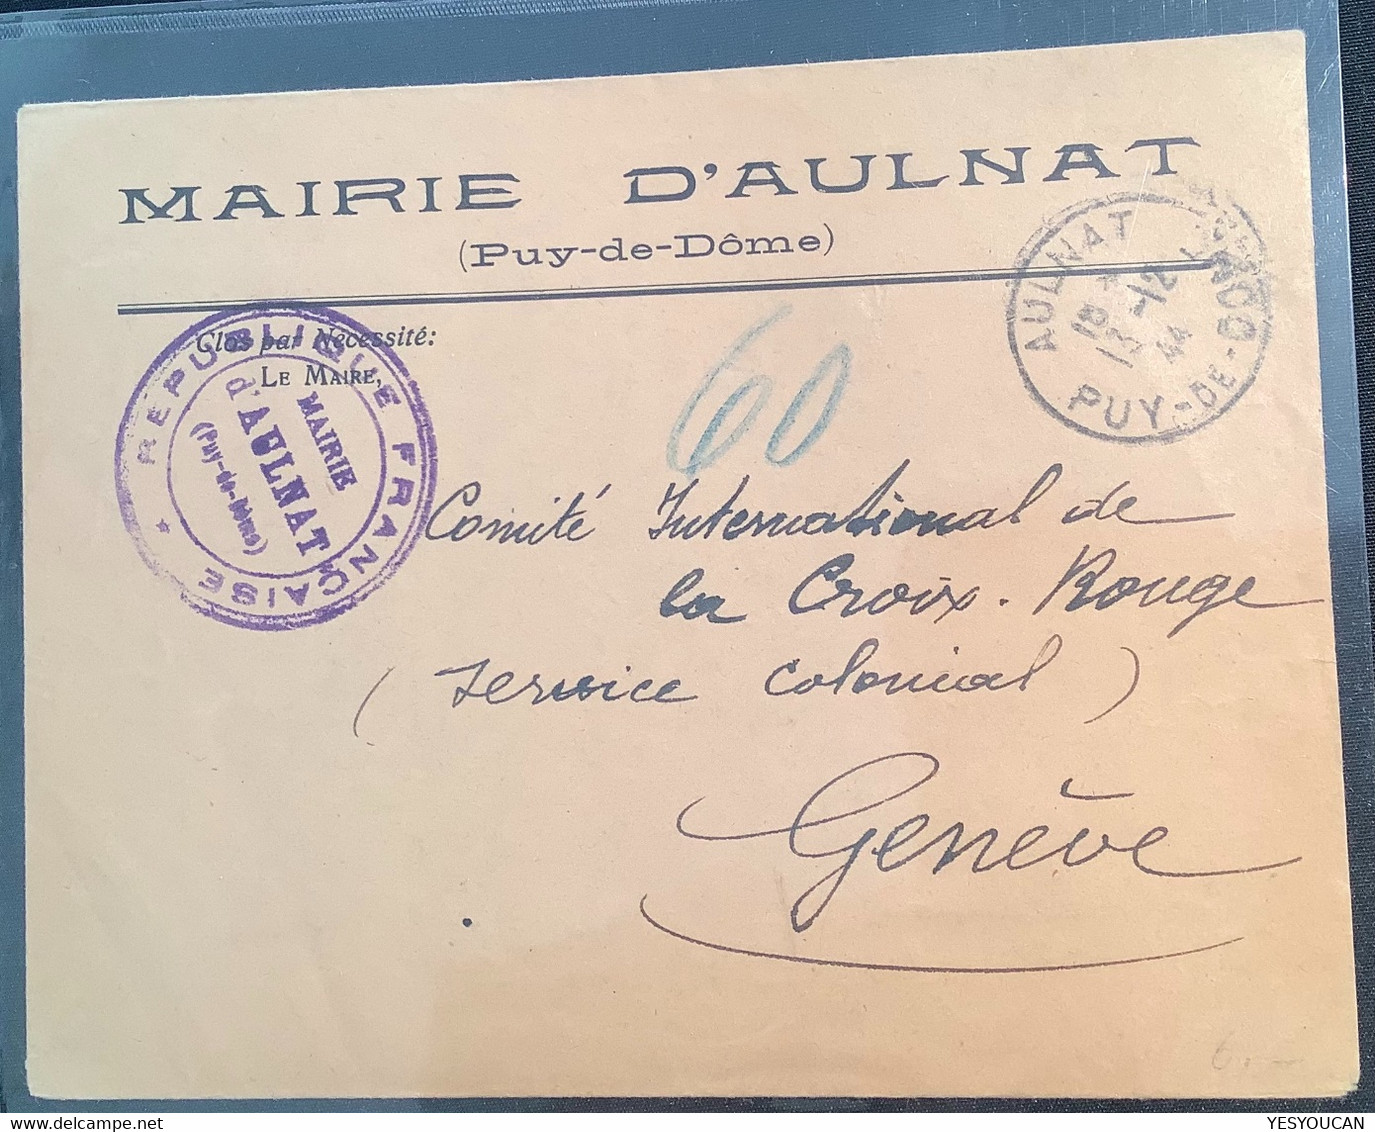 MAIRIE D’ AULNAT 1944 CROIX ROUGE SERVICE COLONIAL>Genéve Suisse (France PUY DE DÔME 63 Red Cross War Cover Lettre Pow - Guerre De 1939-45